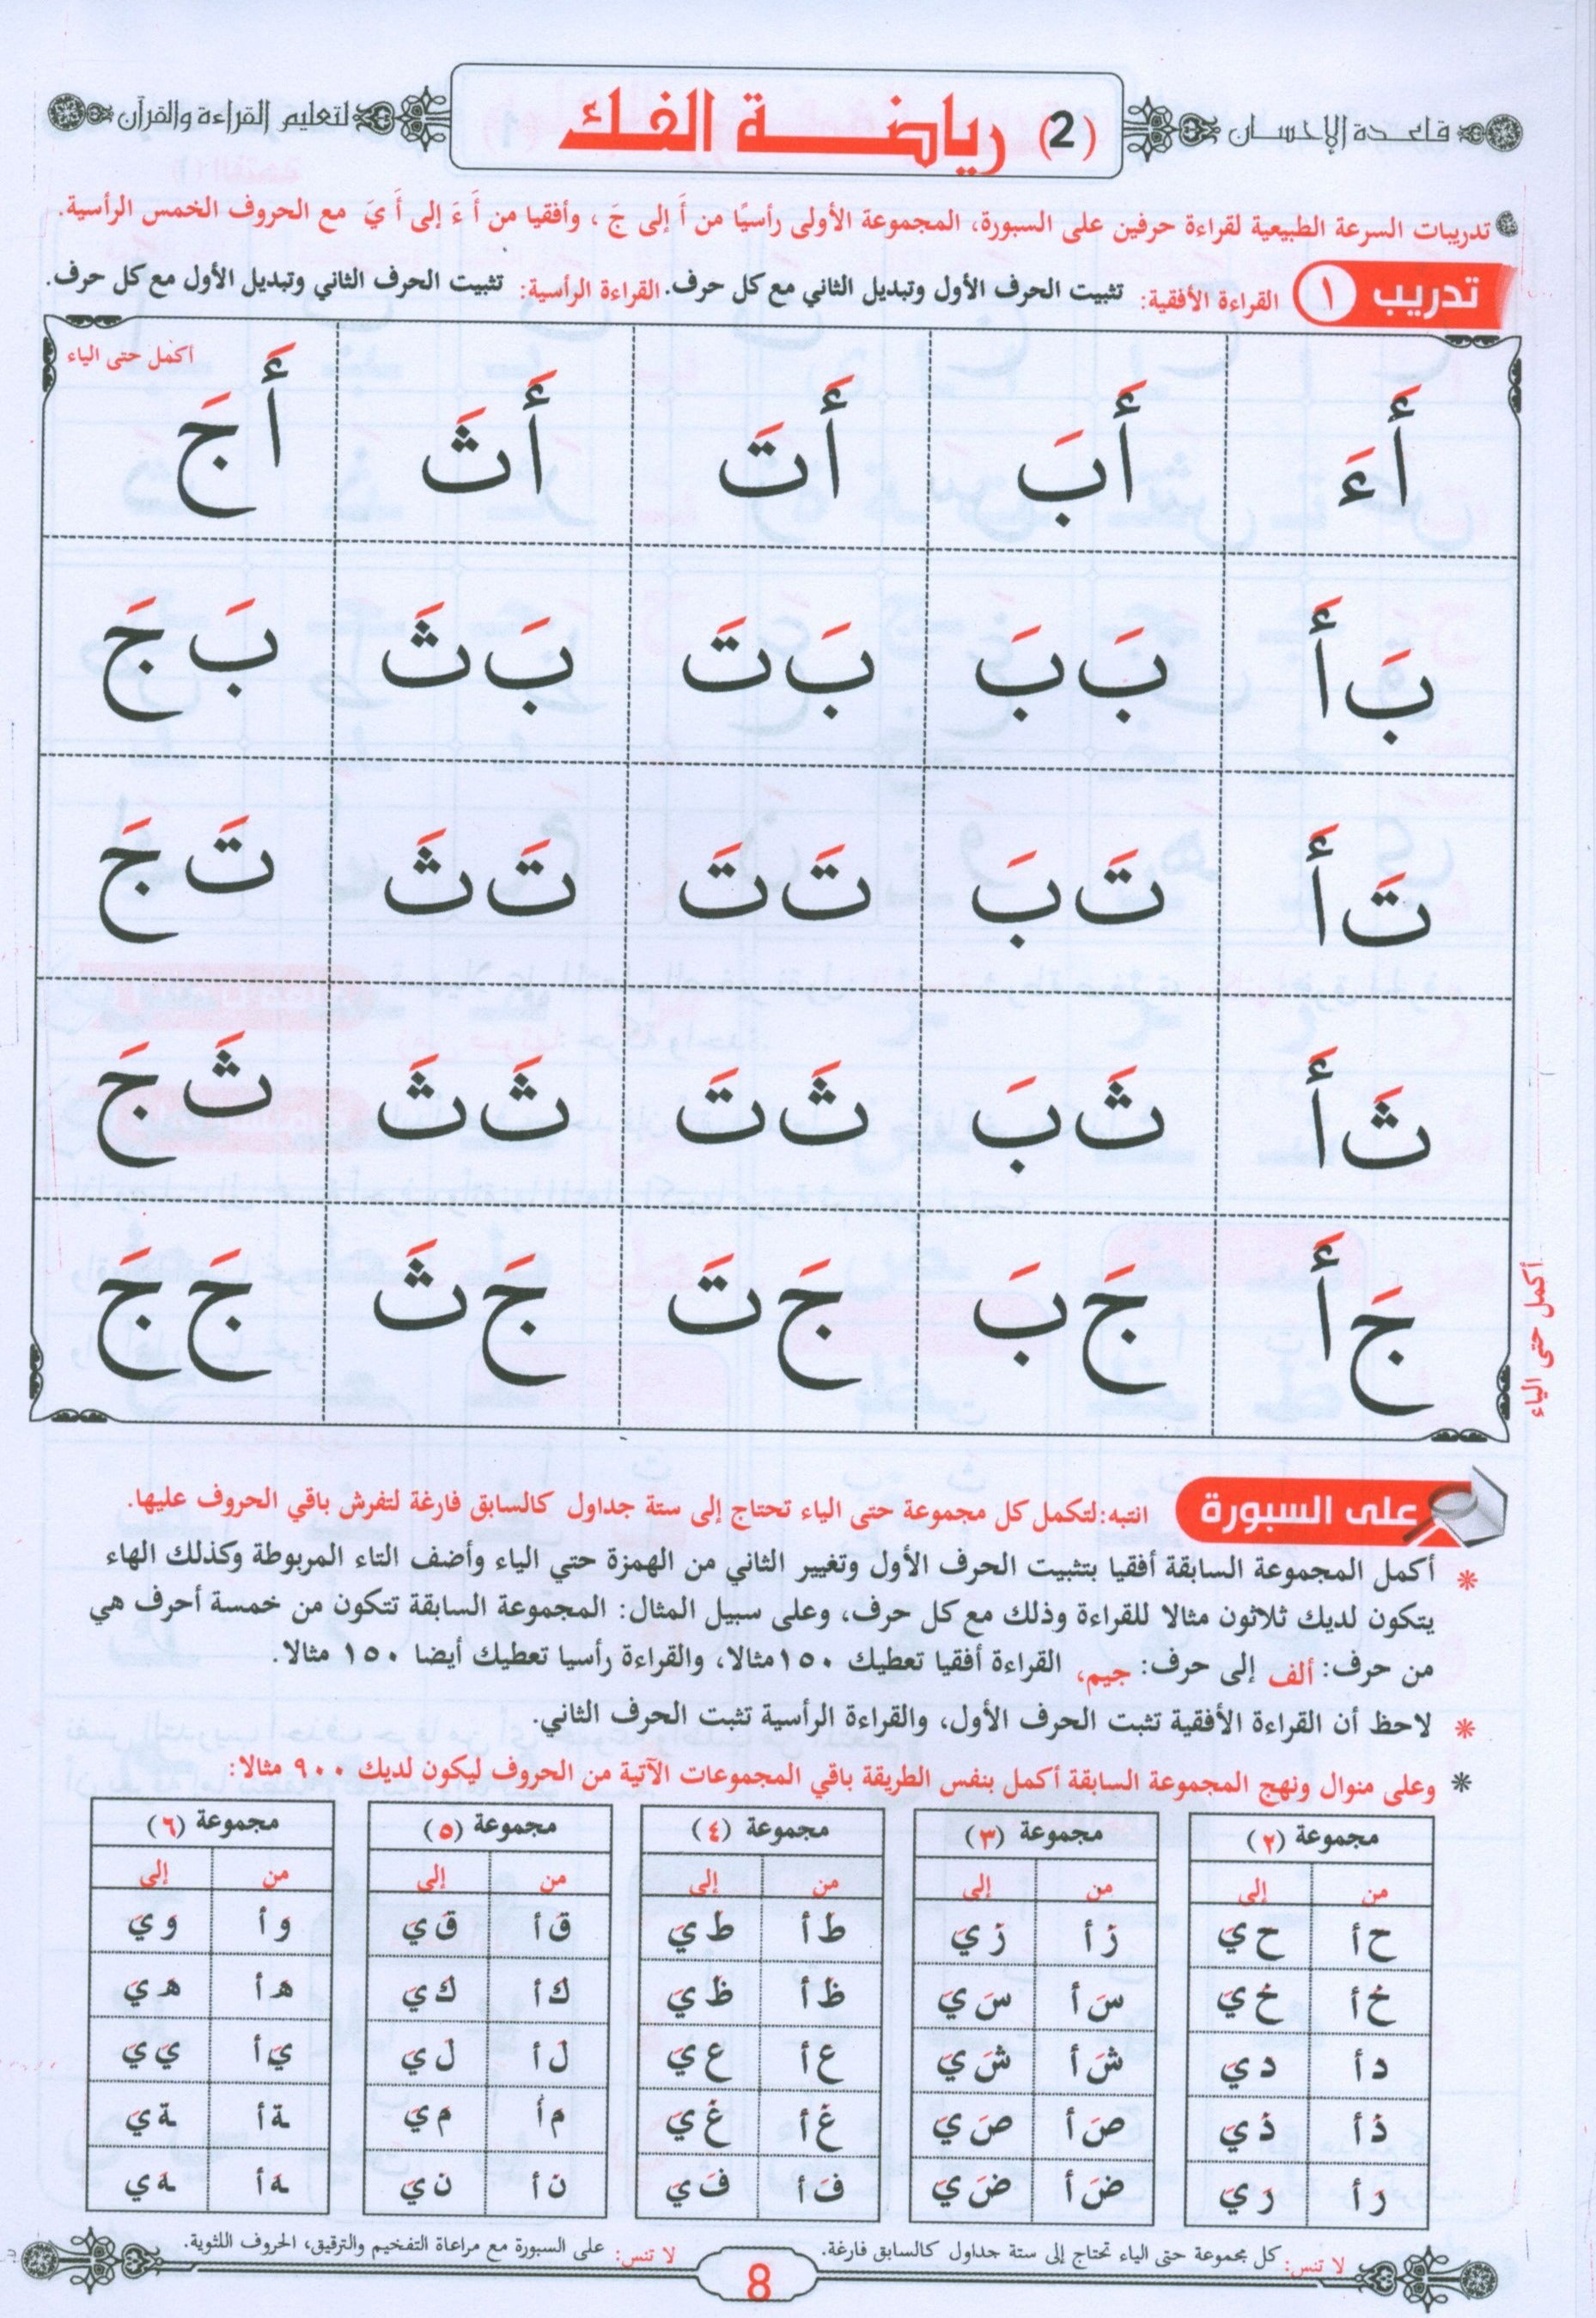 Quran & Arabic Reading Teacher - Baghdadi Qaida معلم القراءة العربية و القرآن مع قاعدة بغدادية